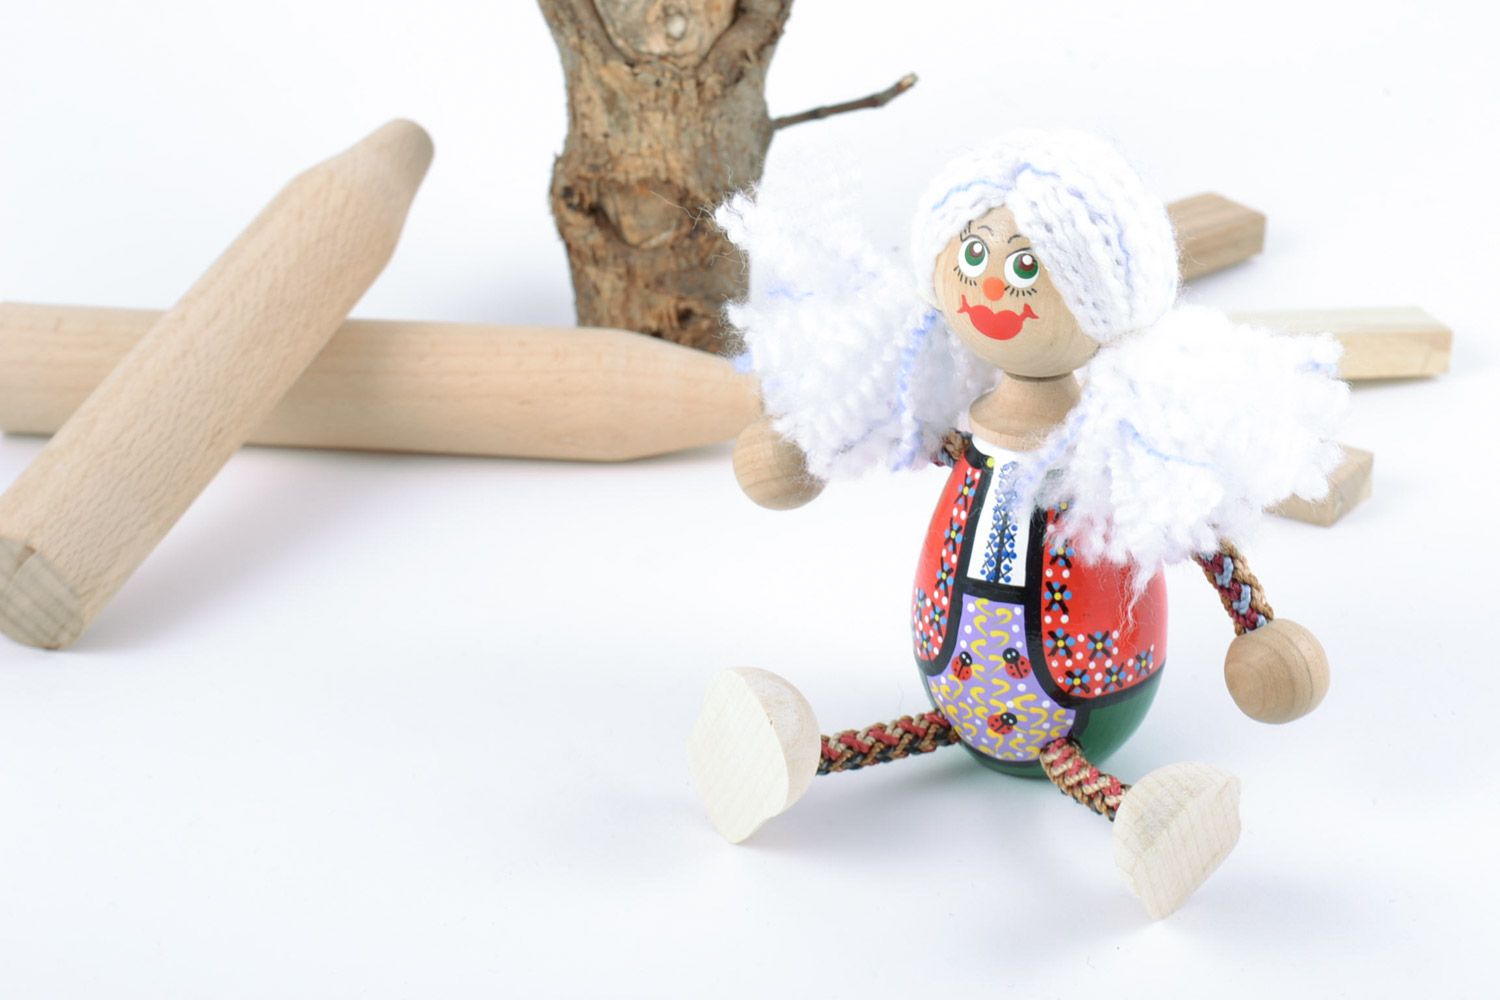 Petit jouet en bois fait main peint en forme de fille sympa cadeau pour enfant photo 1